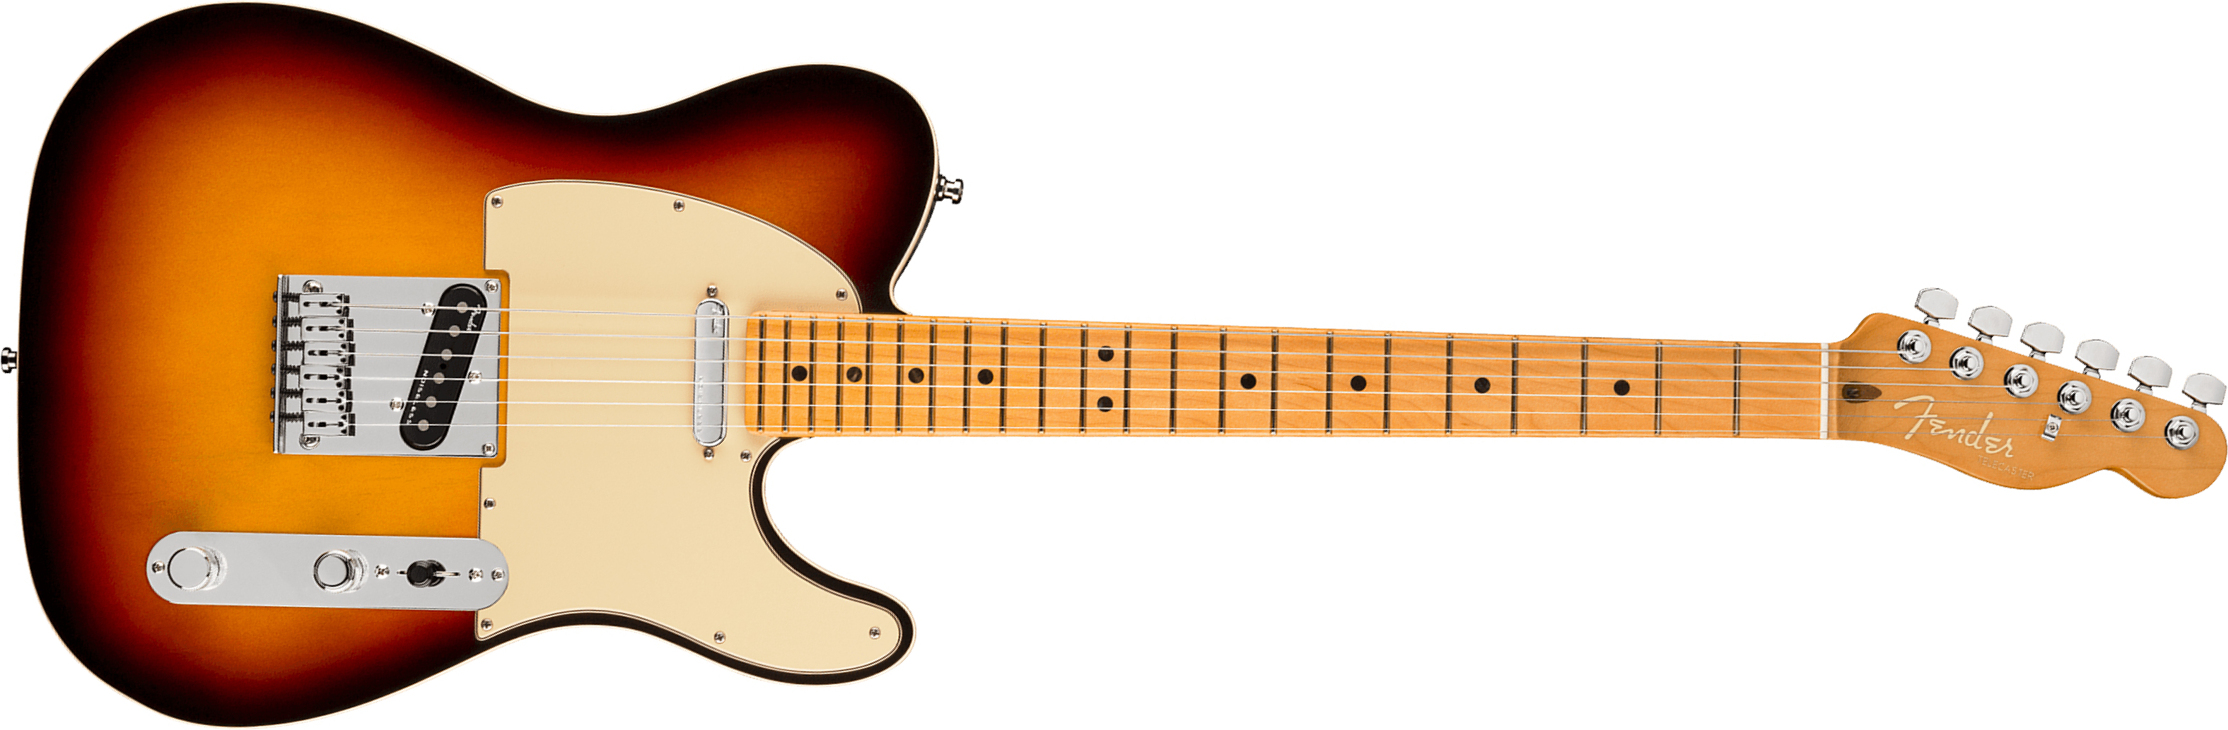 Fender Tele American Ultra 2019 Usa Mn - Ultraburst - E-Gitarre in Teleform - Main picture